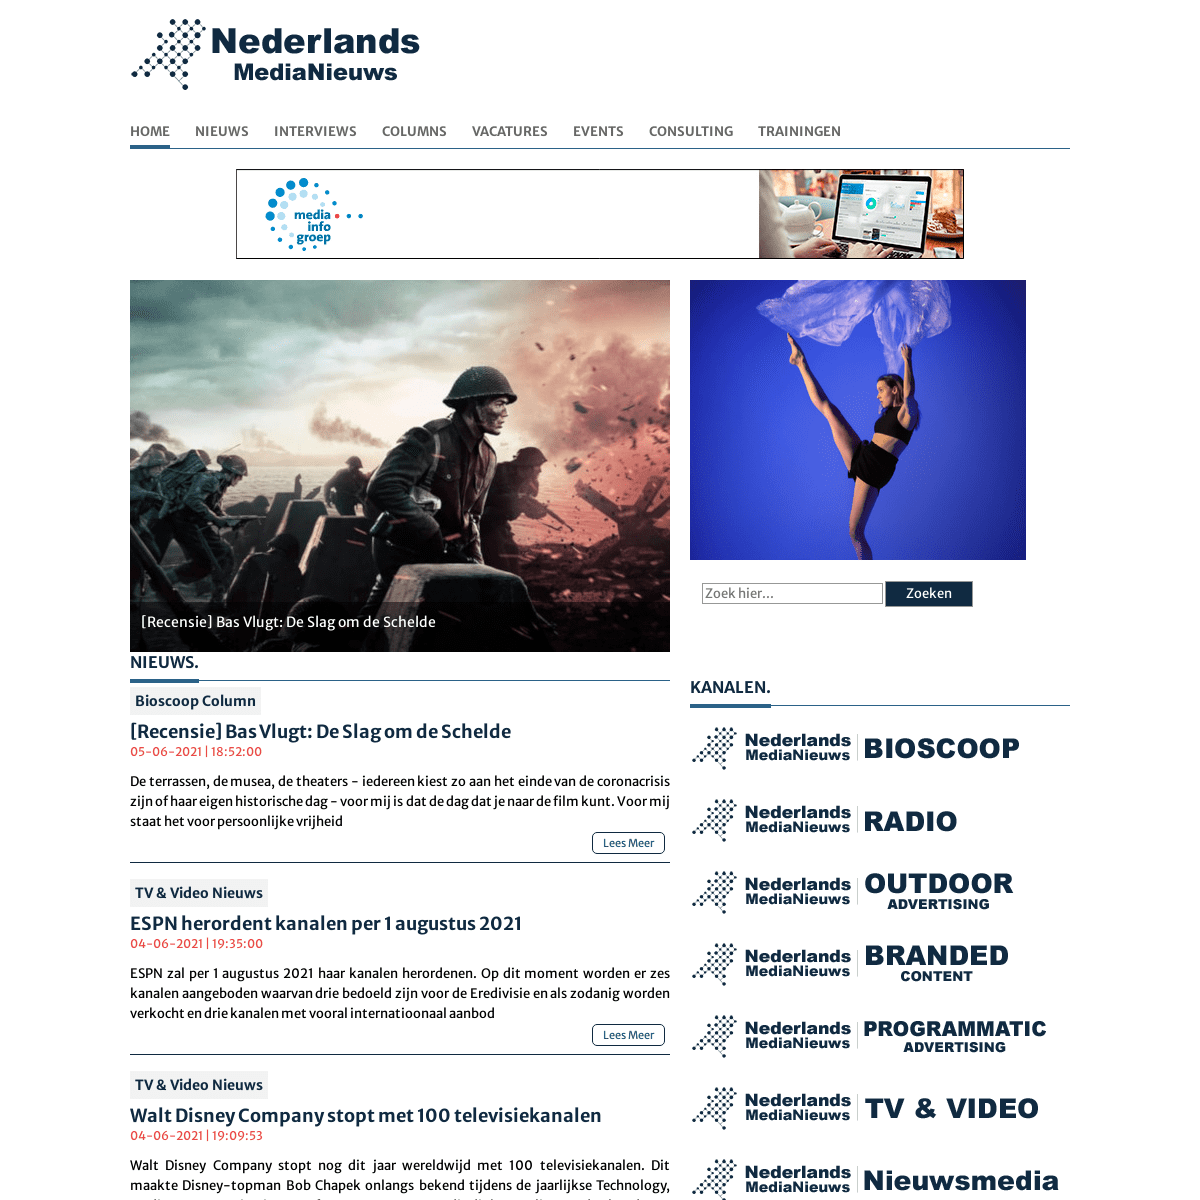 A complete backup of https://nederlandsmedianieuws.nl